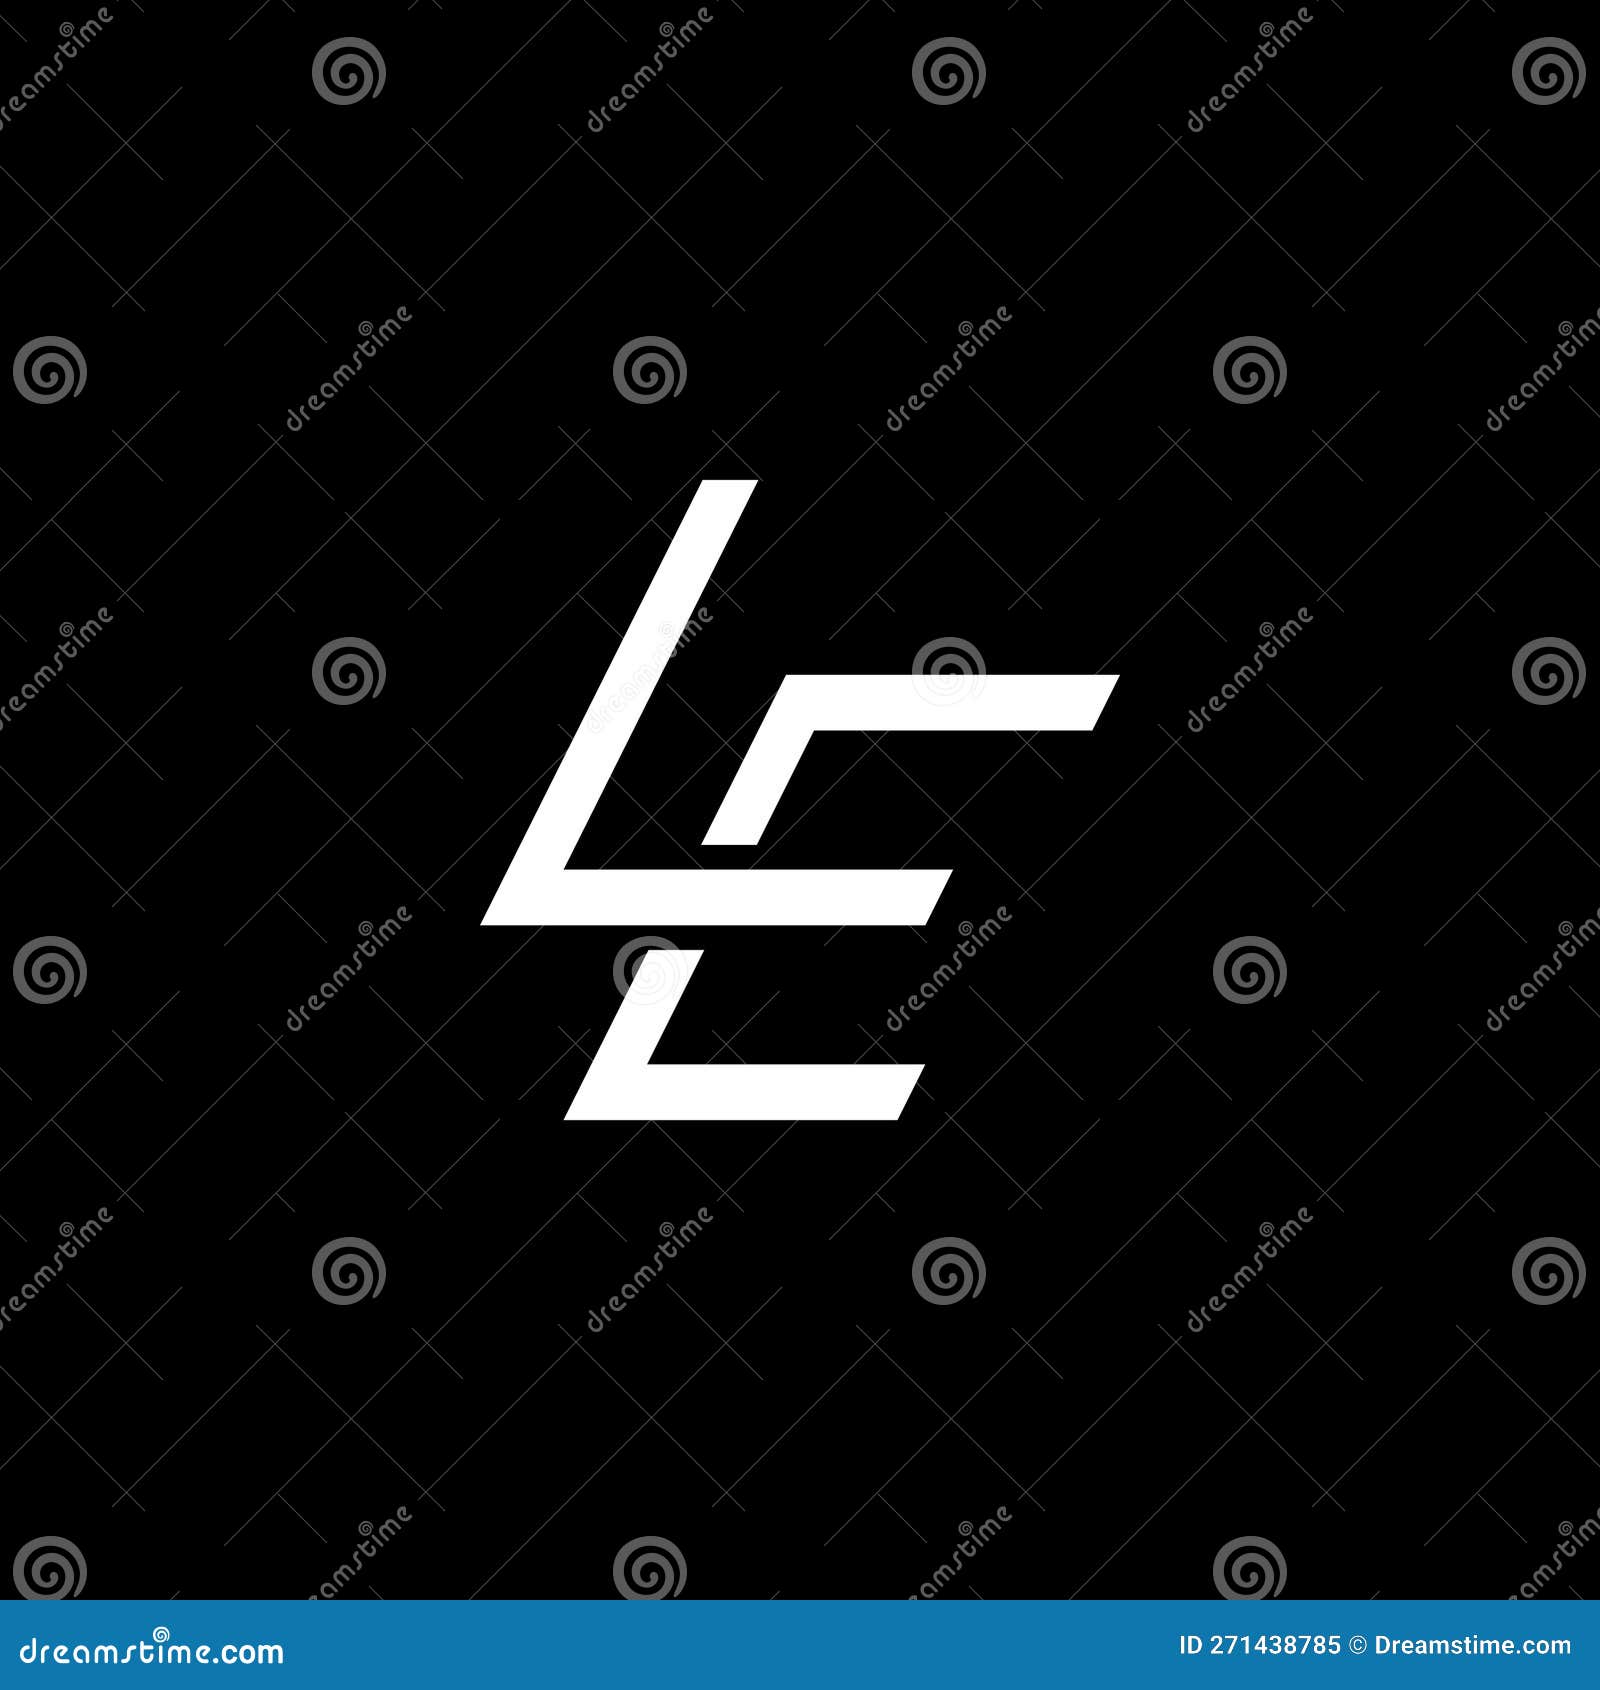 le logo, le monogram, initial le logo, letter le logo, letter le icon